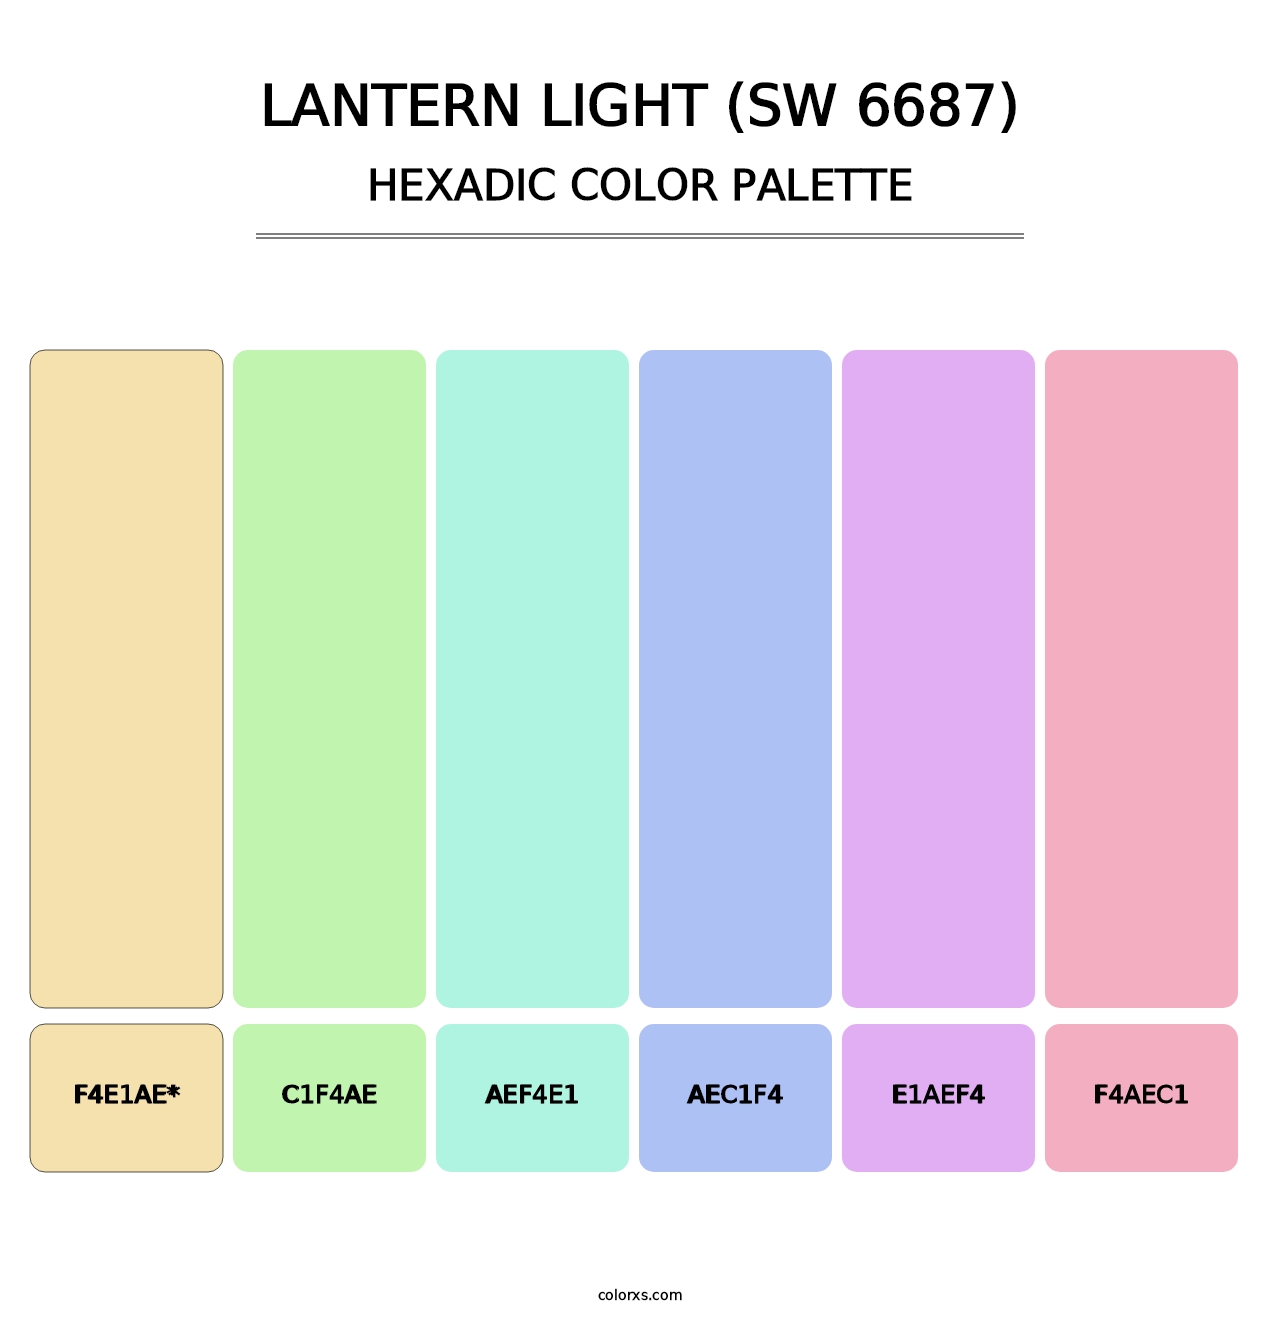 Lantern Light (SW 6687) - Hexadic Color Palette